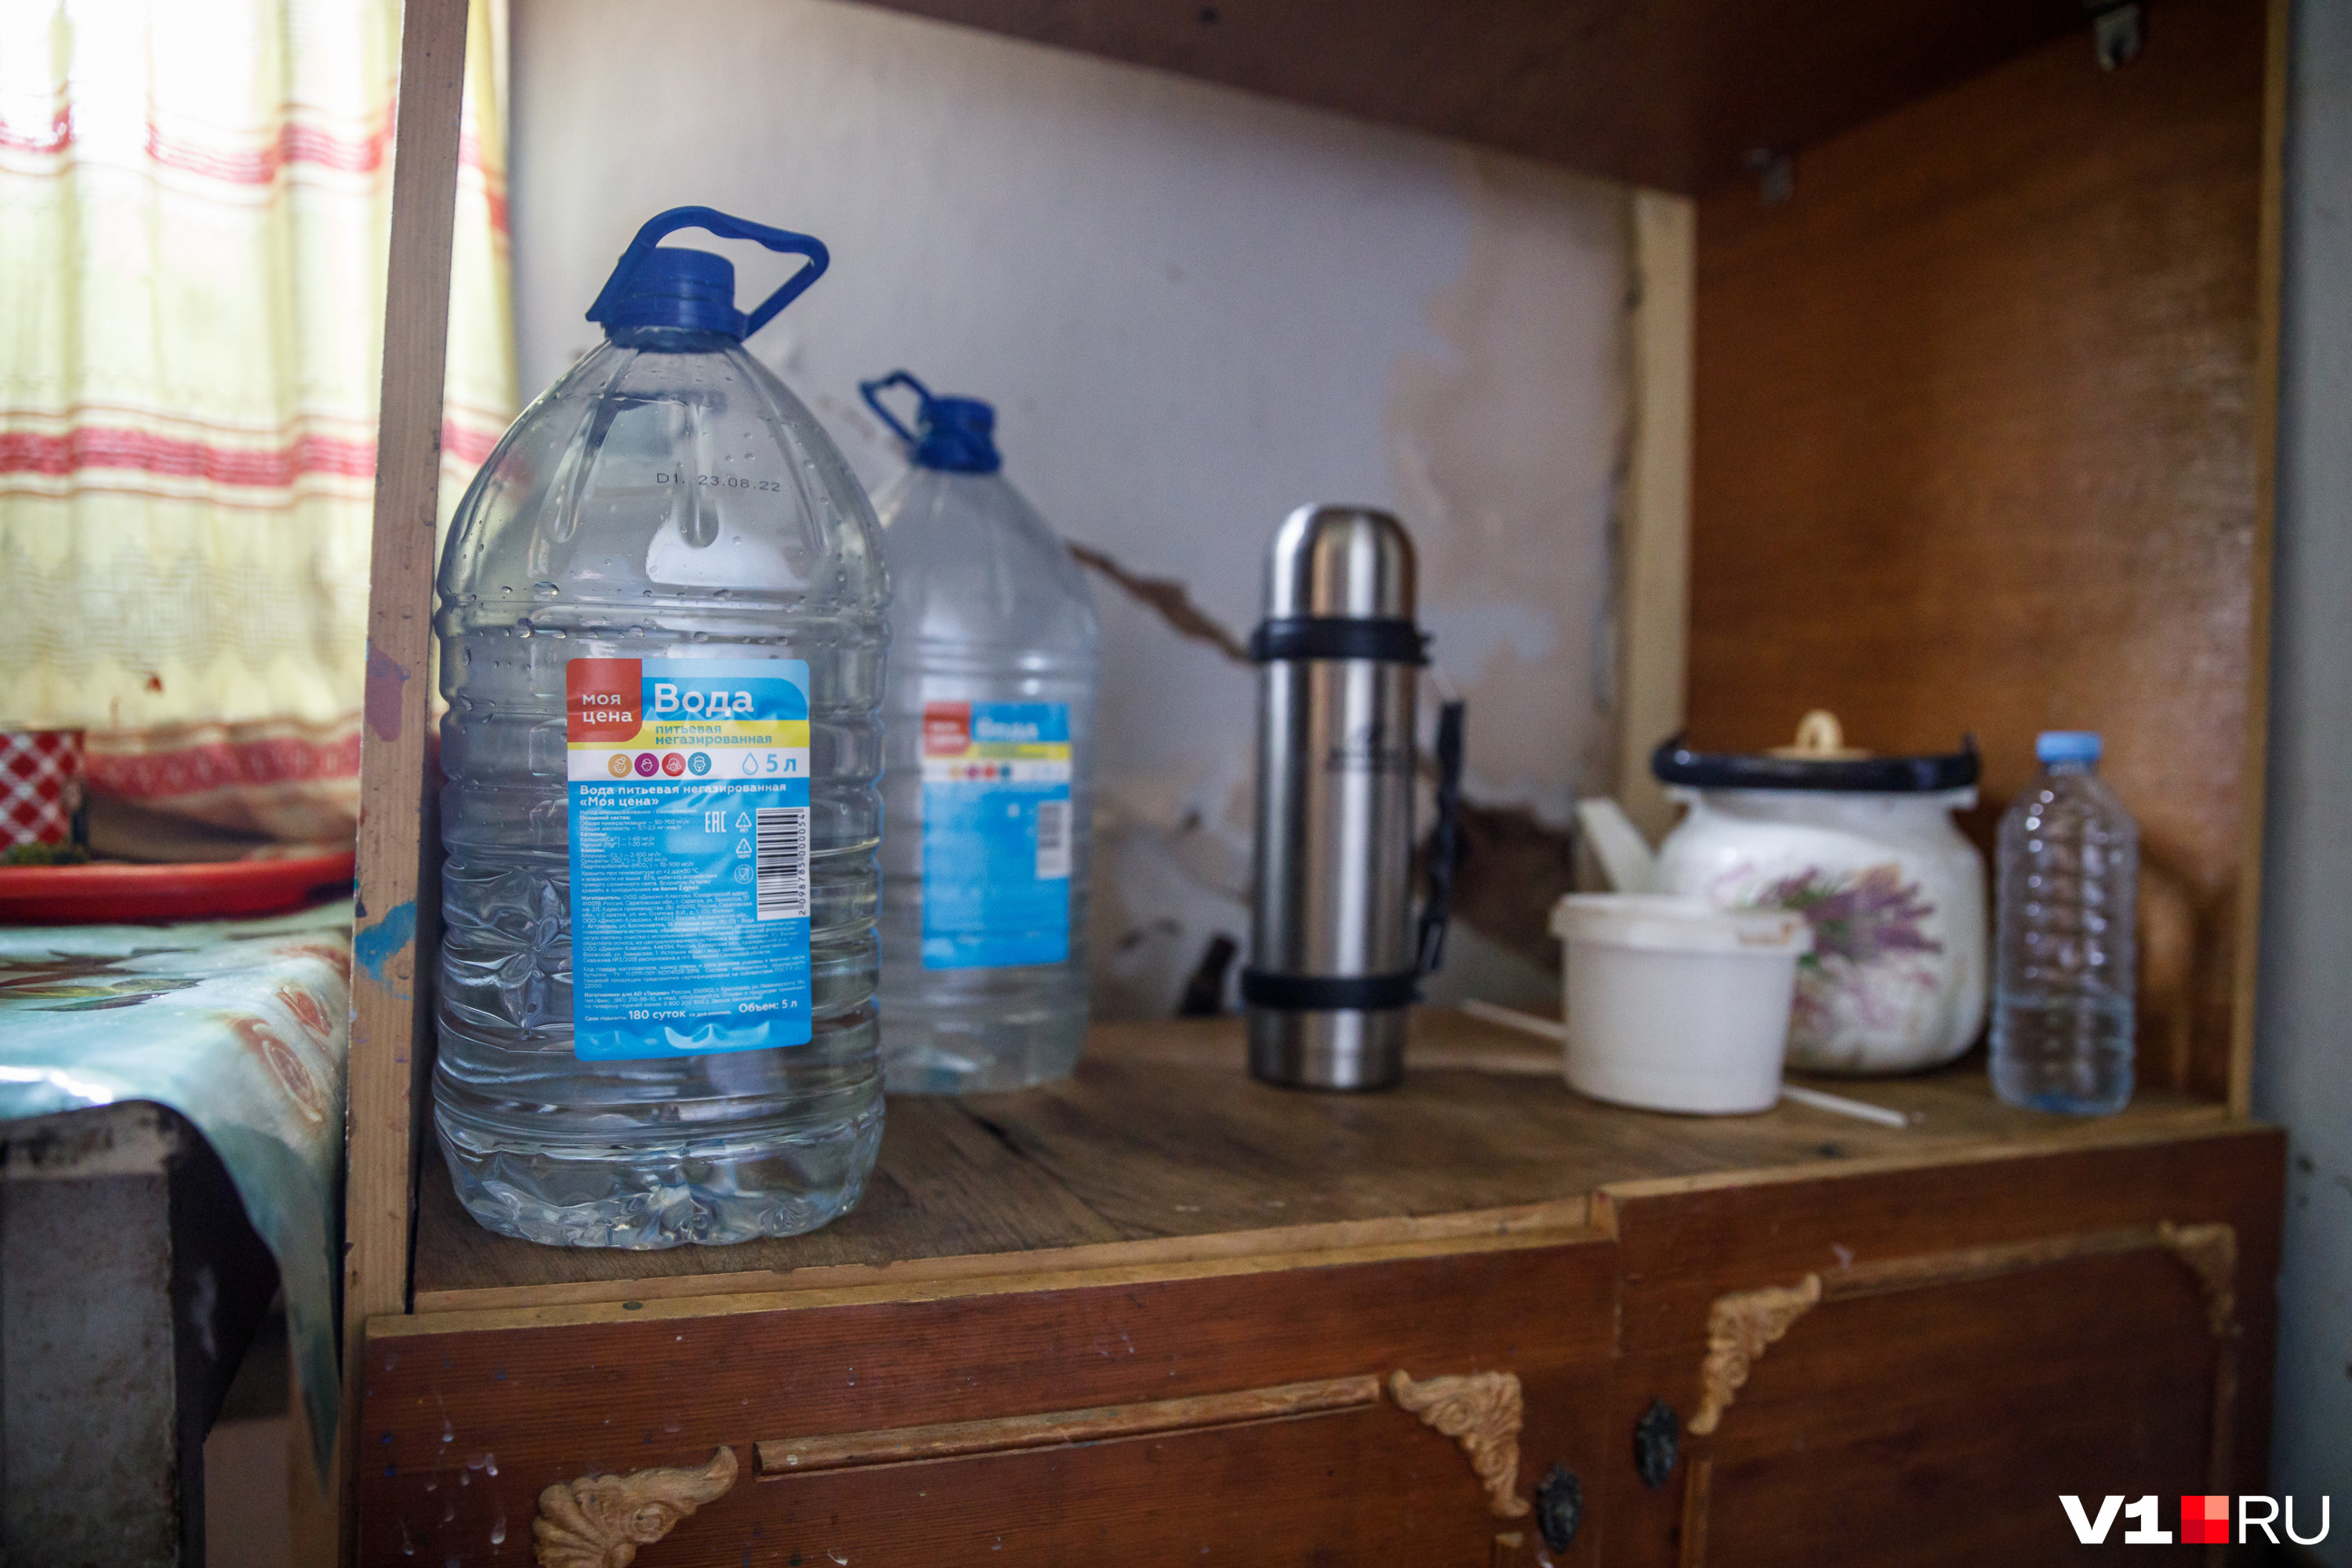 Вода вслед за отключением электричества стала исчезать в Чите